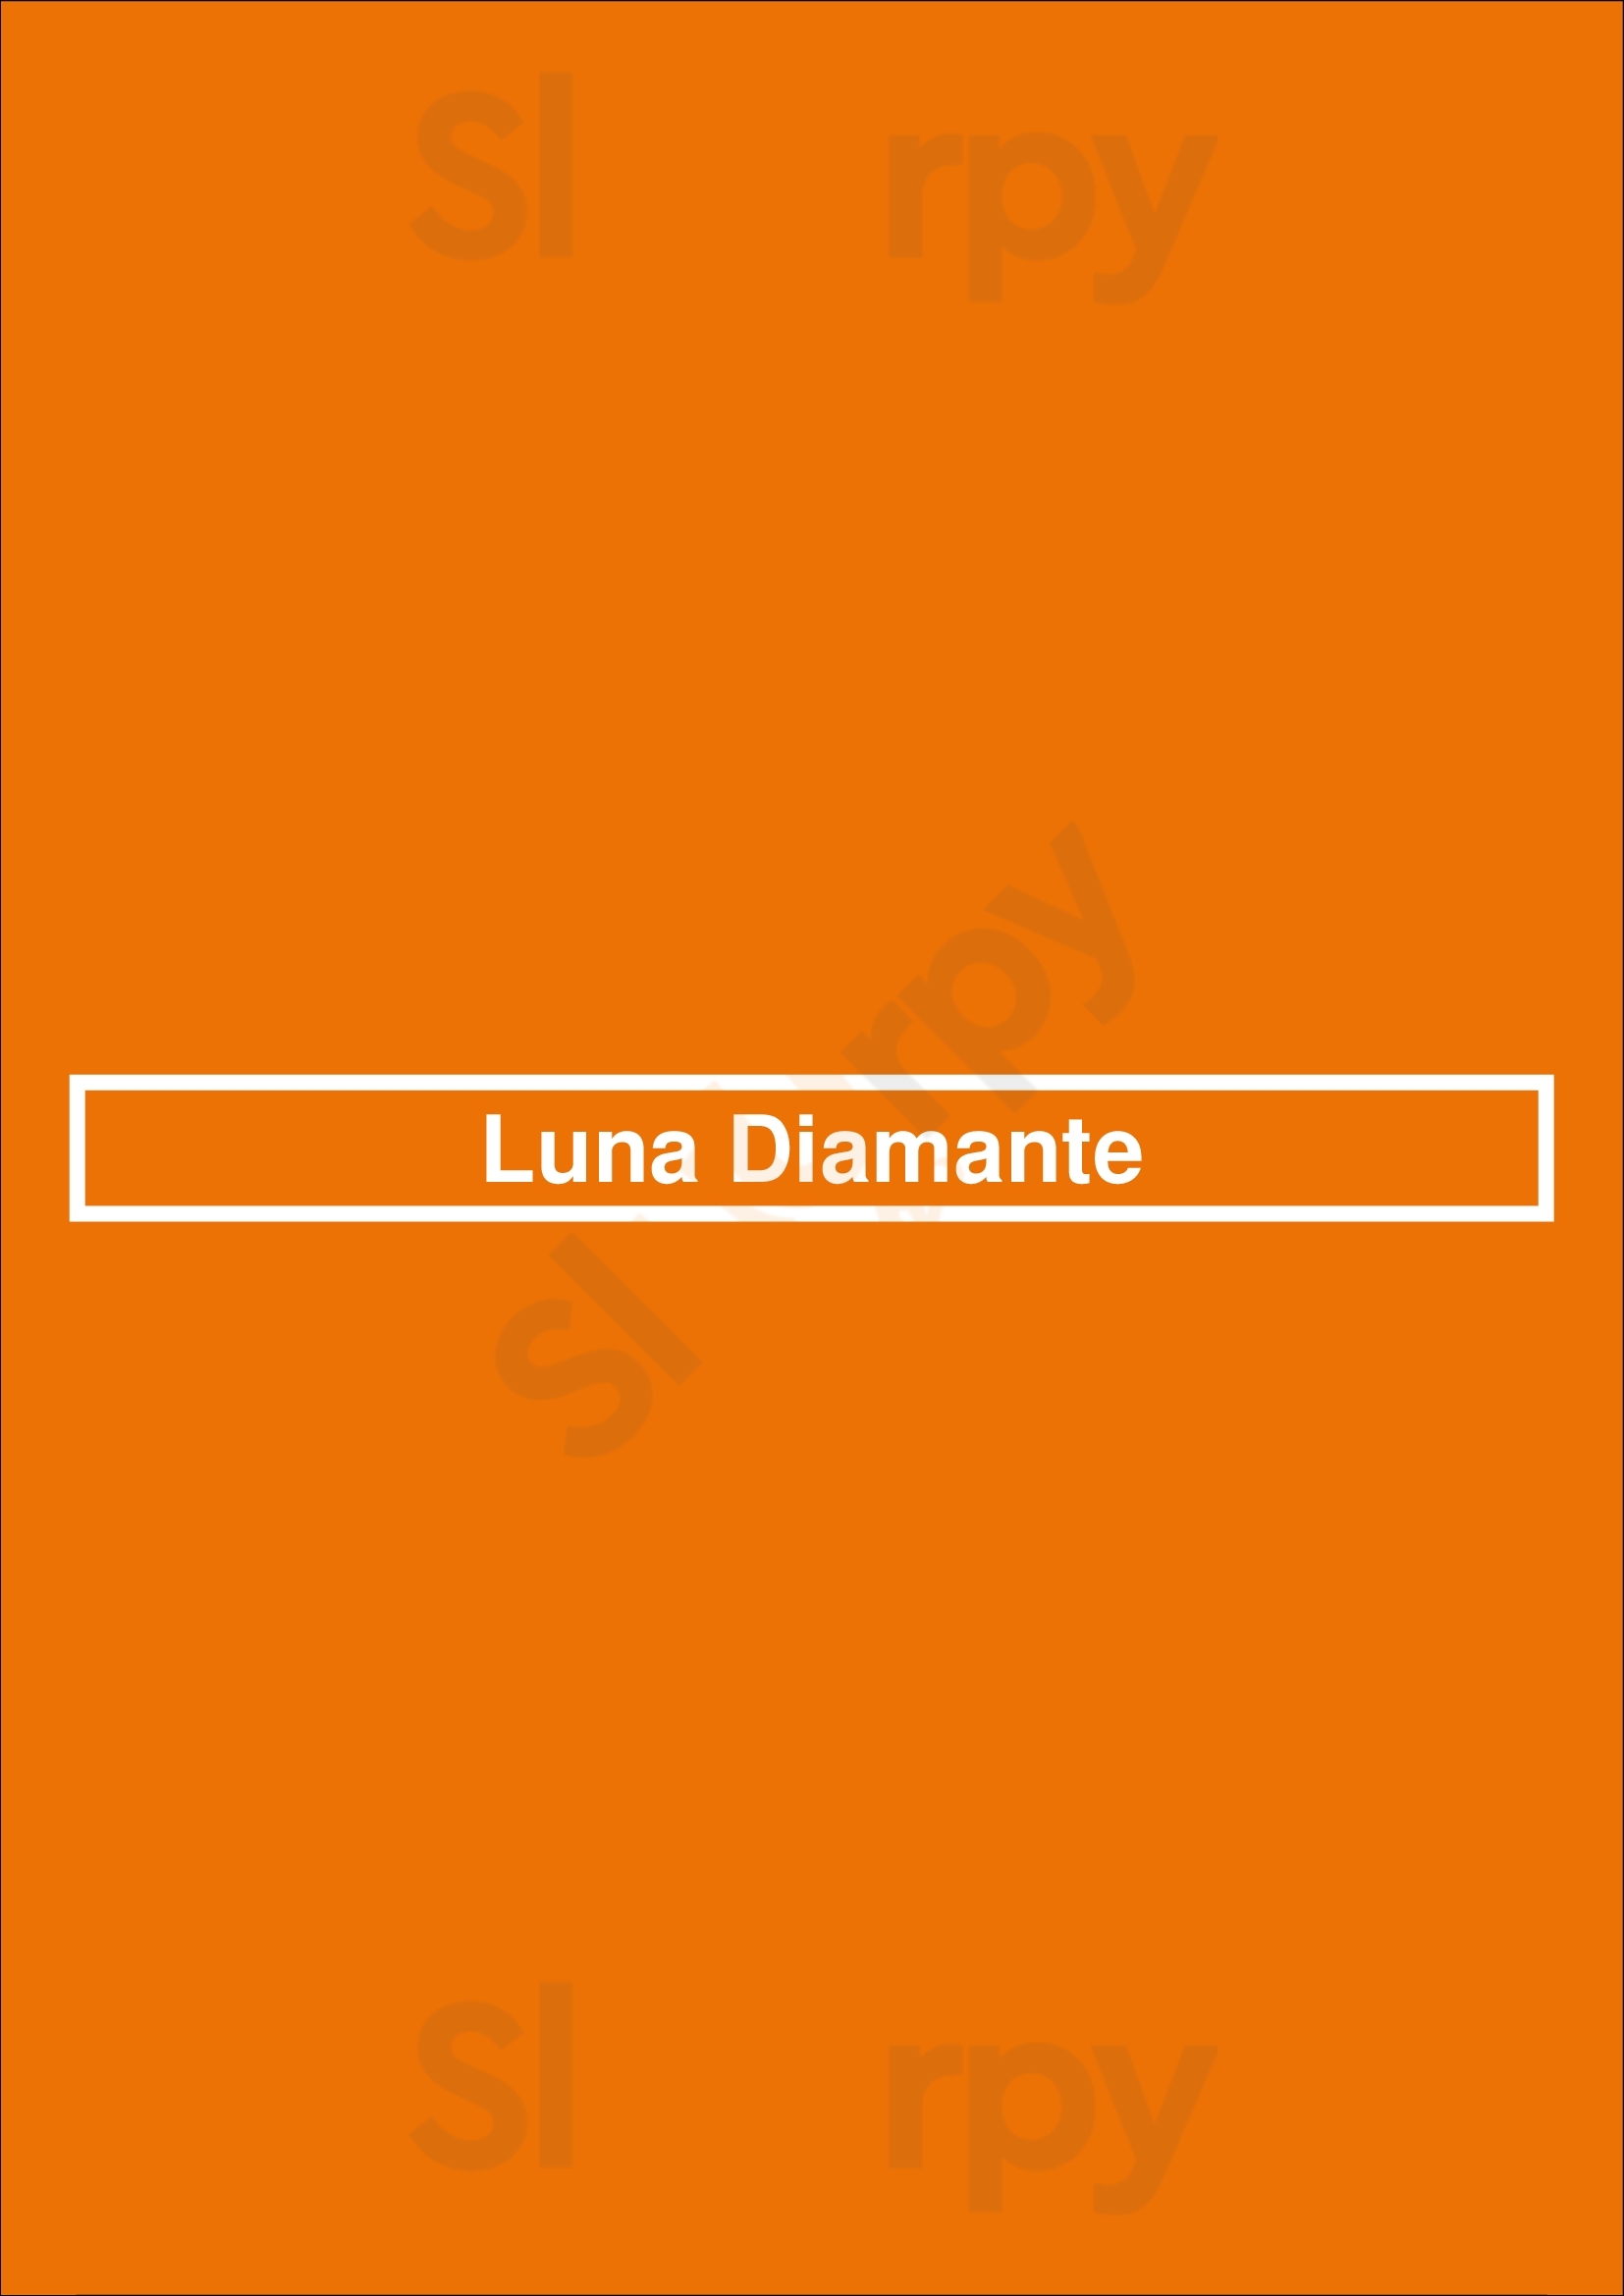 Luna Diamante Sesmarias Menu - 1